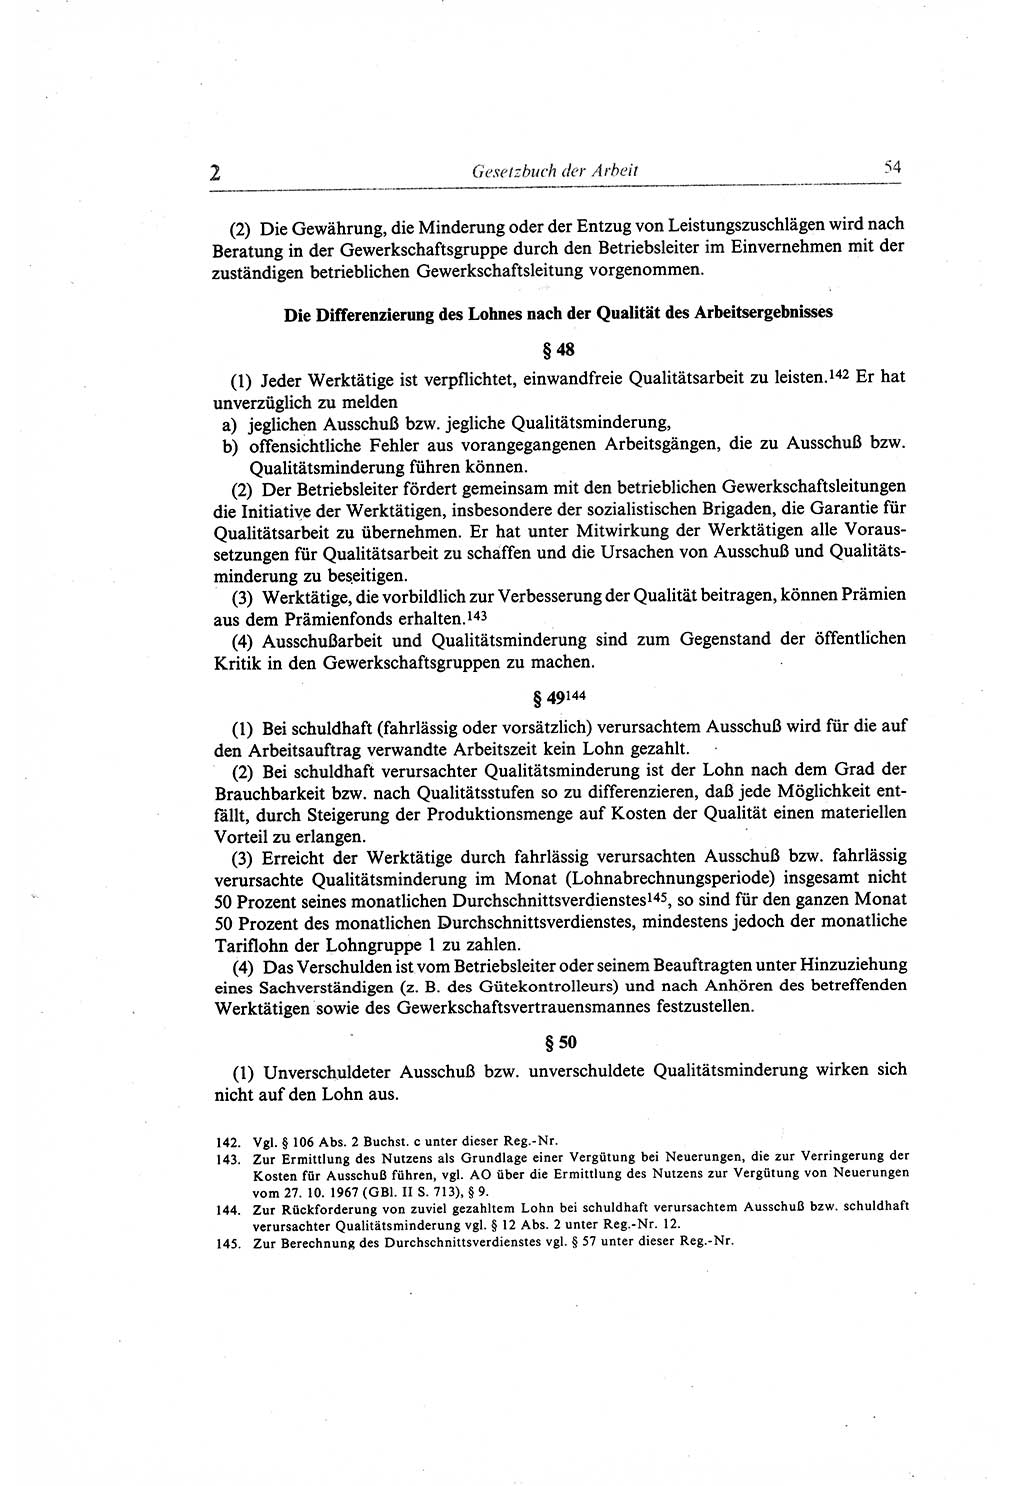 Gesetzbuch der Arbeit (GBA) und andere ausgewählte rechtliche Bestimmungen [Deutsche Demokratische Republik (DDR)] 1968, Seite 54 (GBA DDR 1968, S. 54)